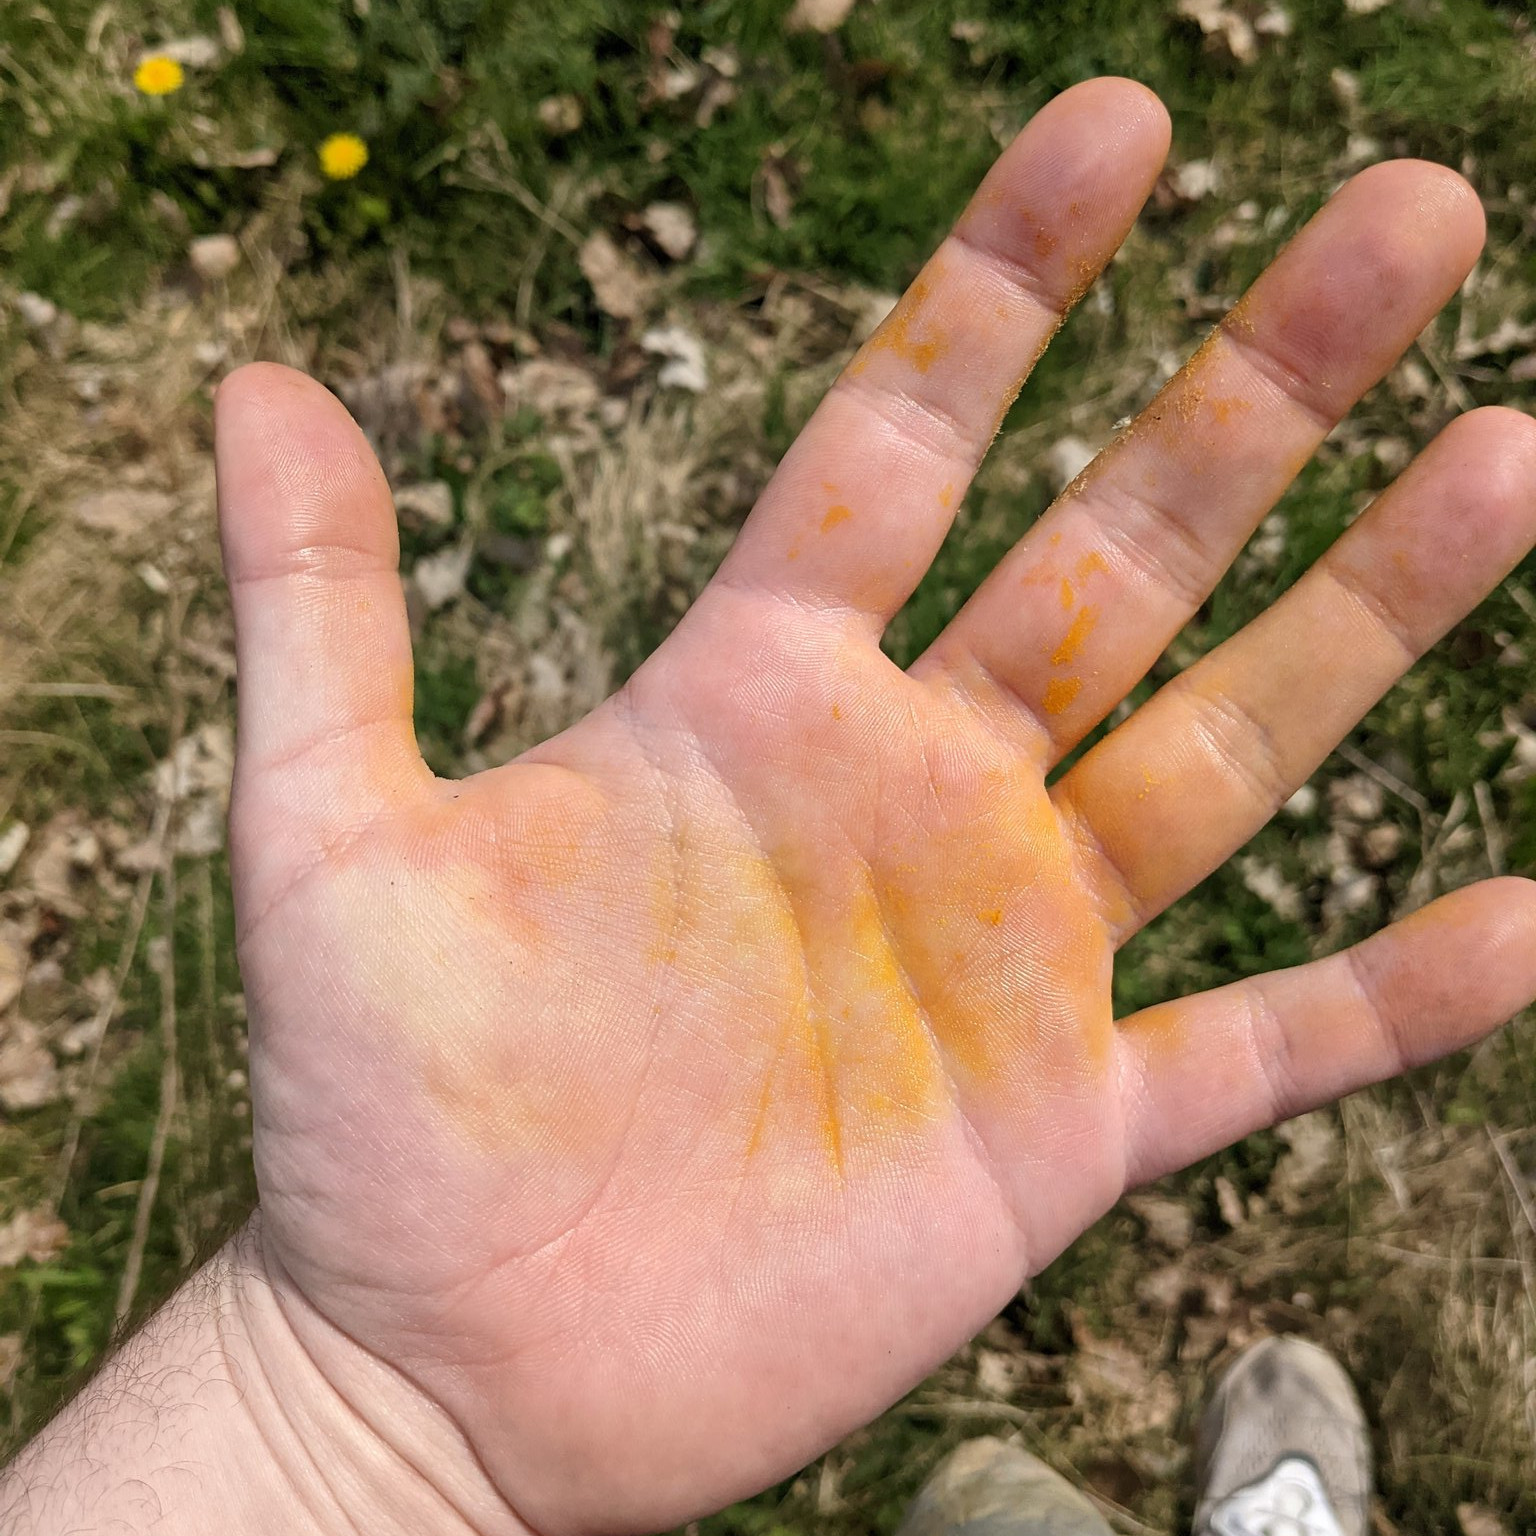 Hands after picking dandelions